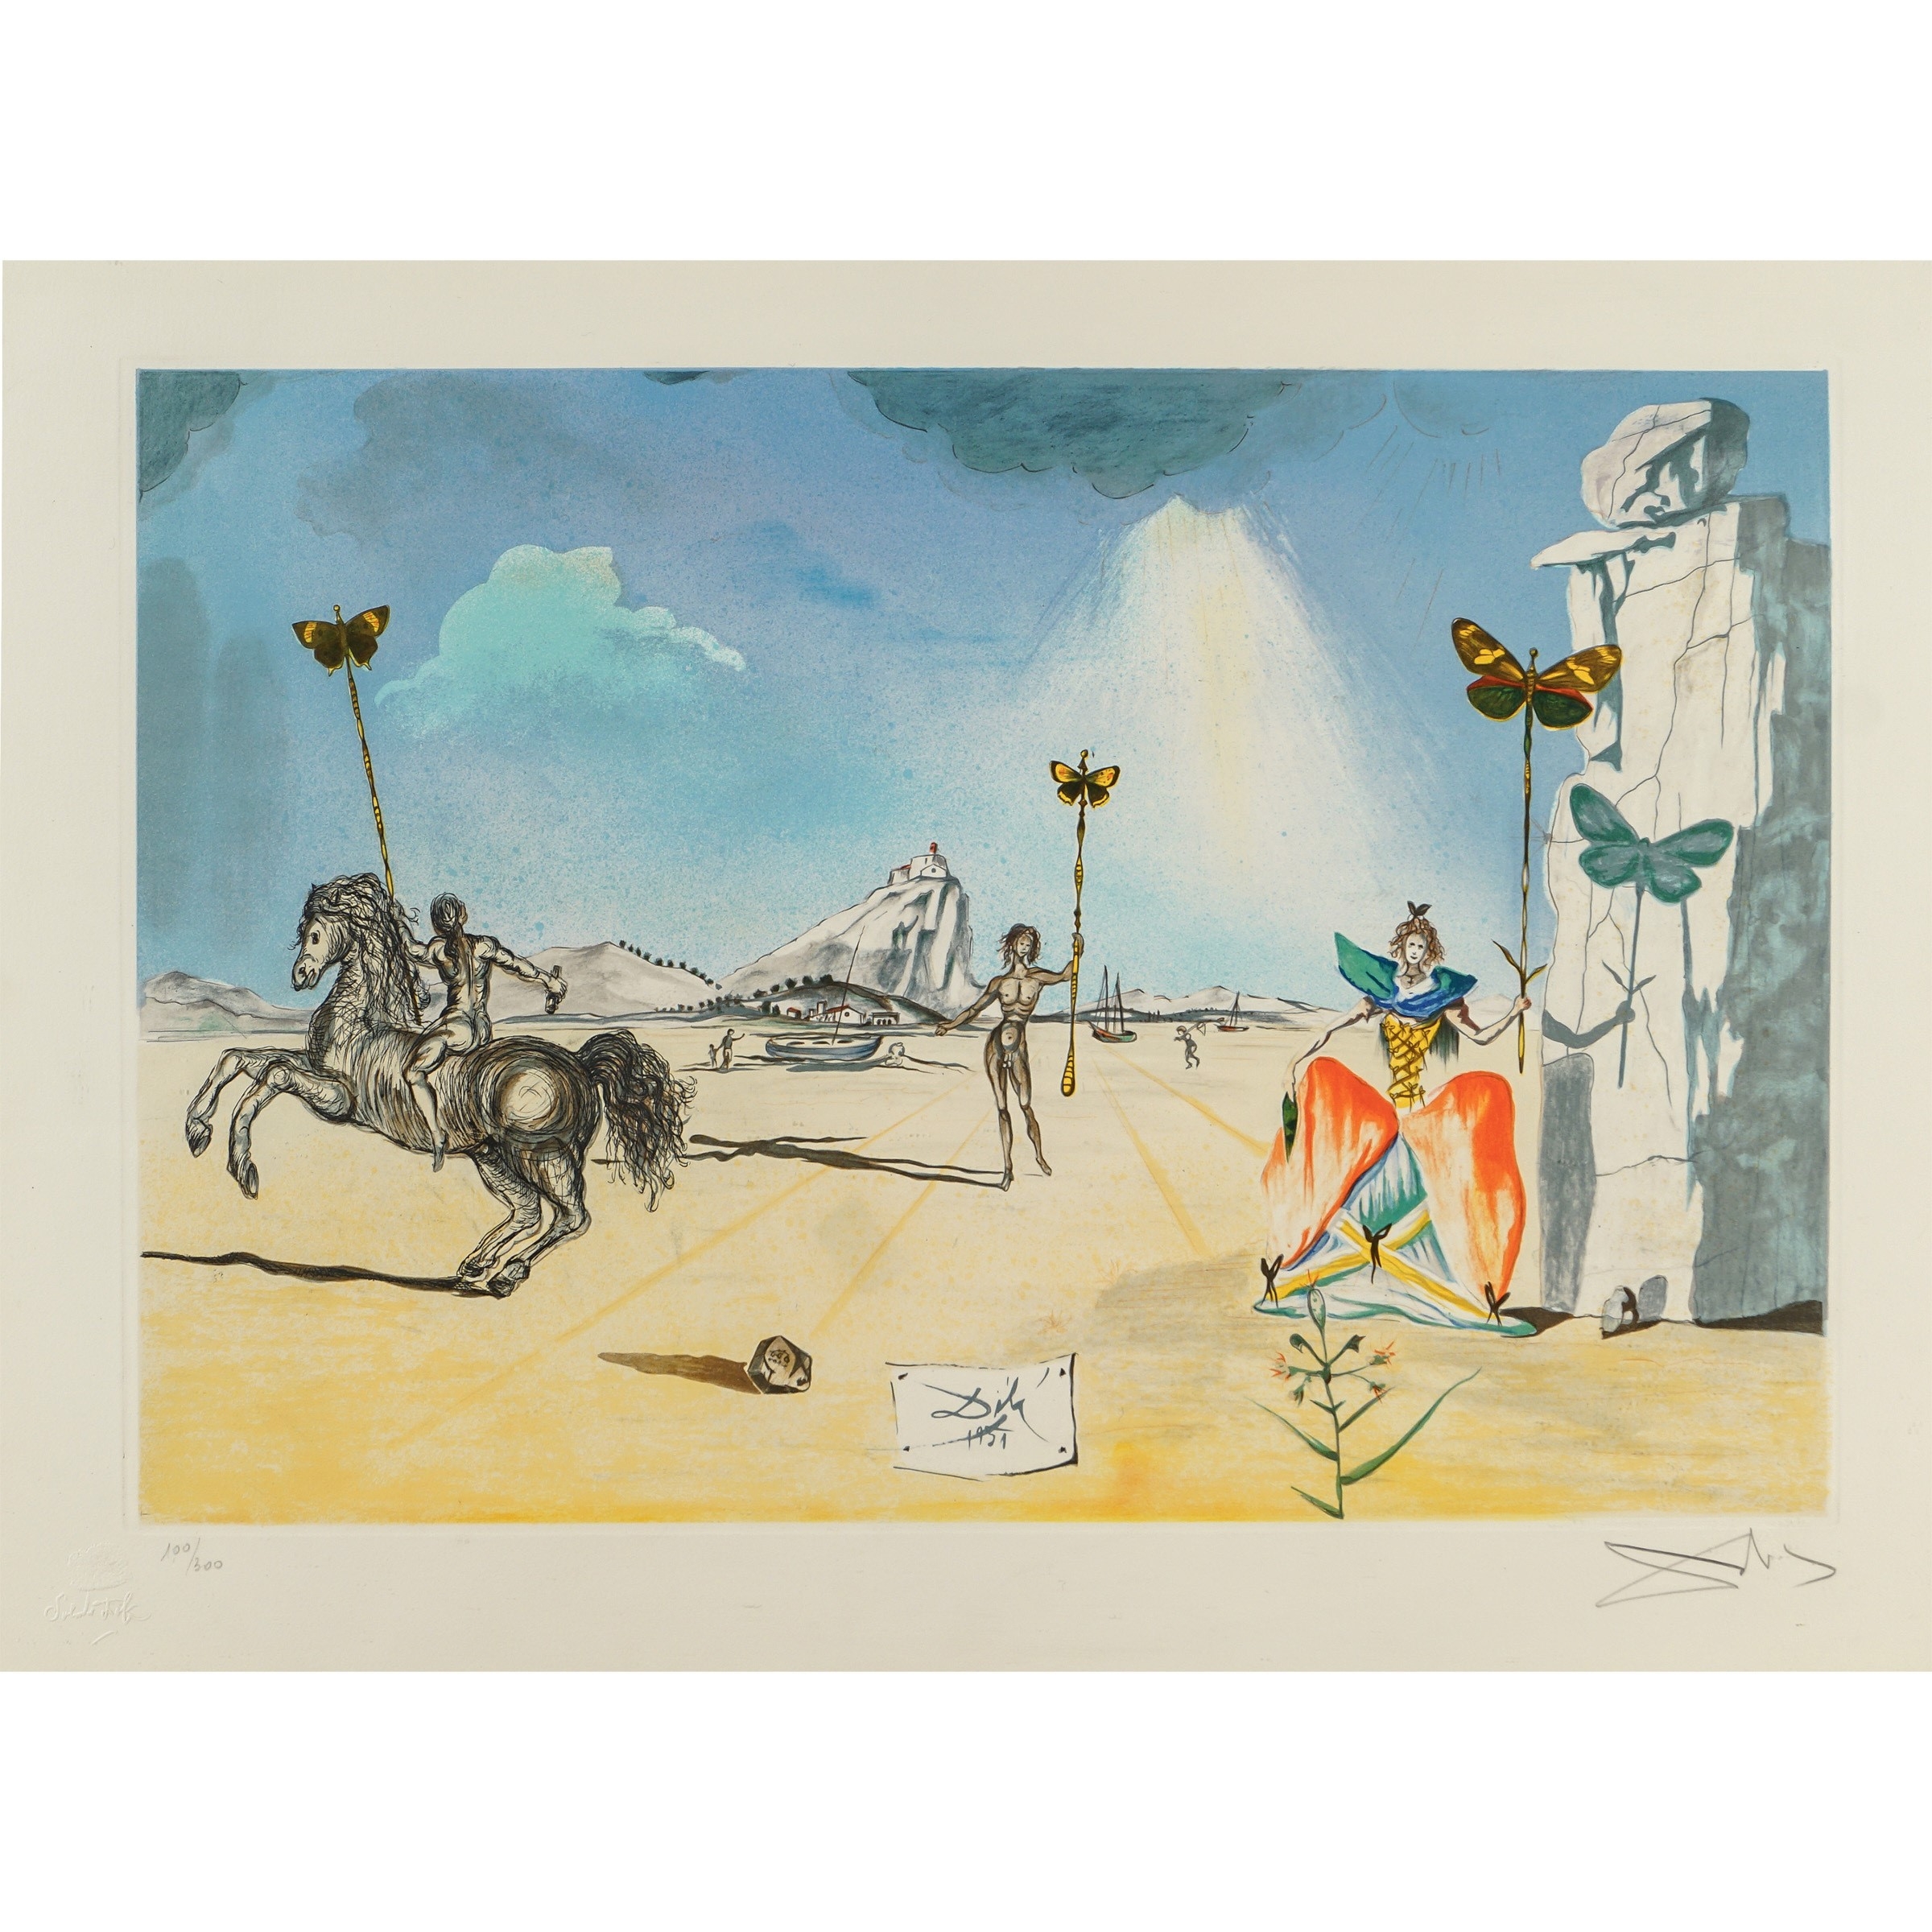 Les Papillons by Salvador Dalí